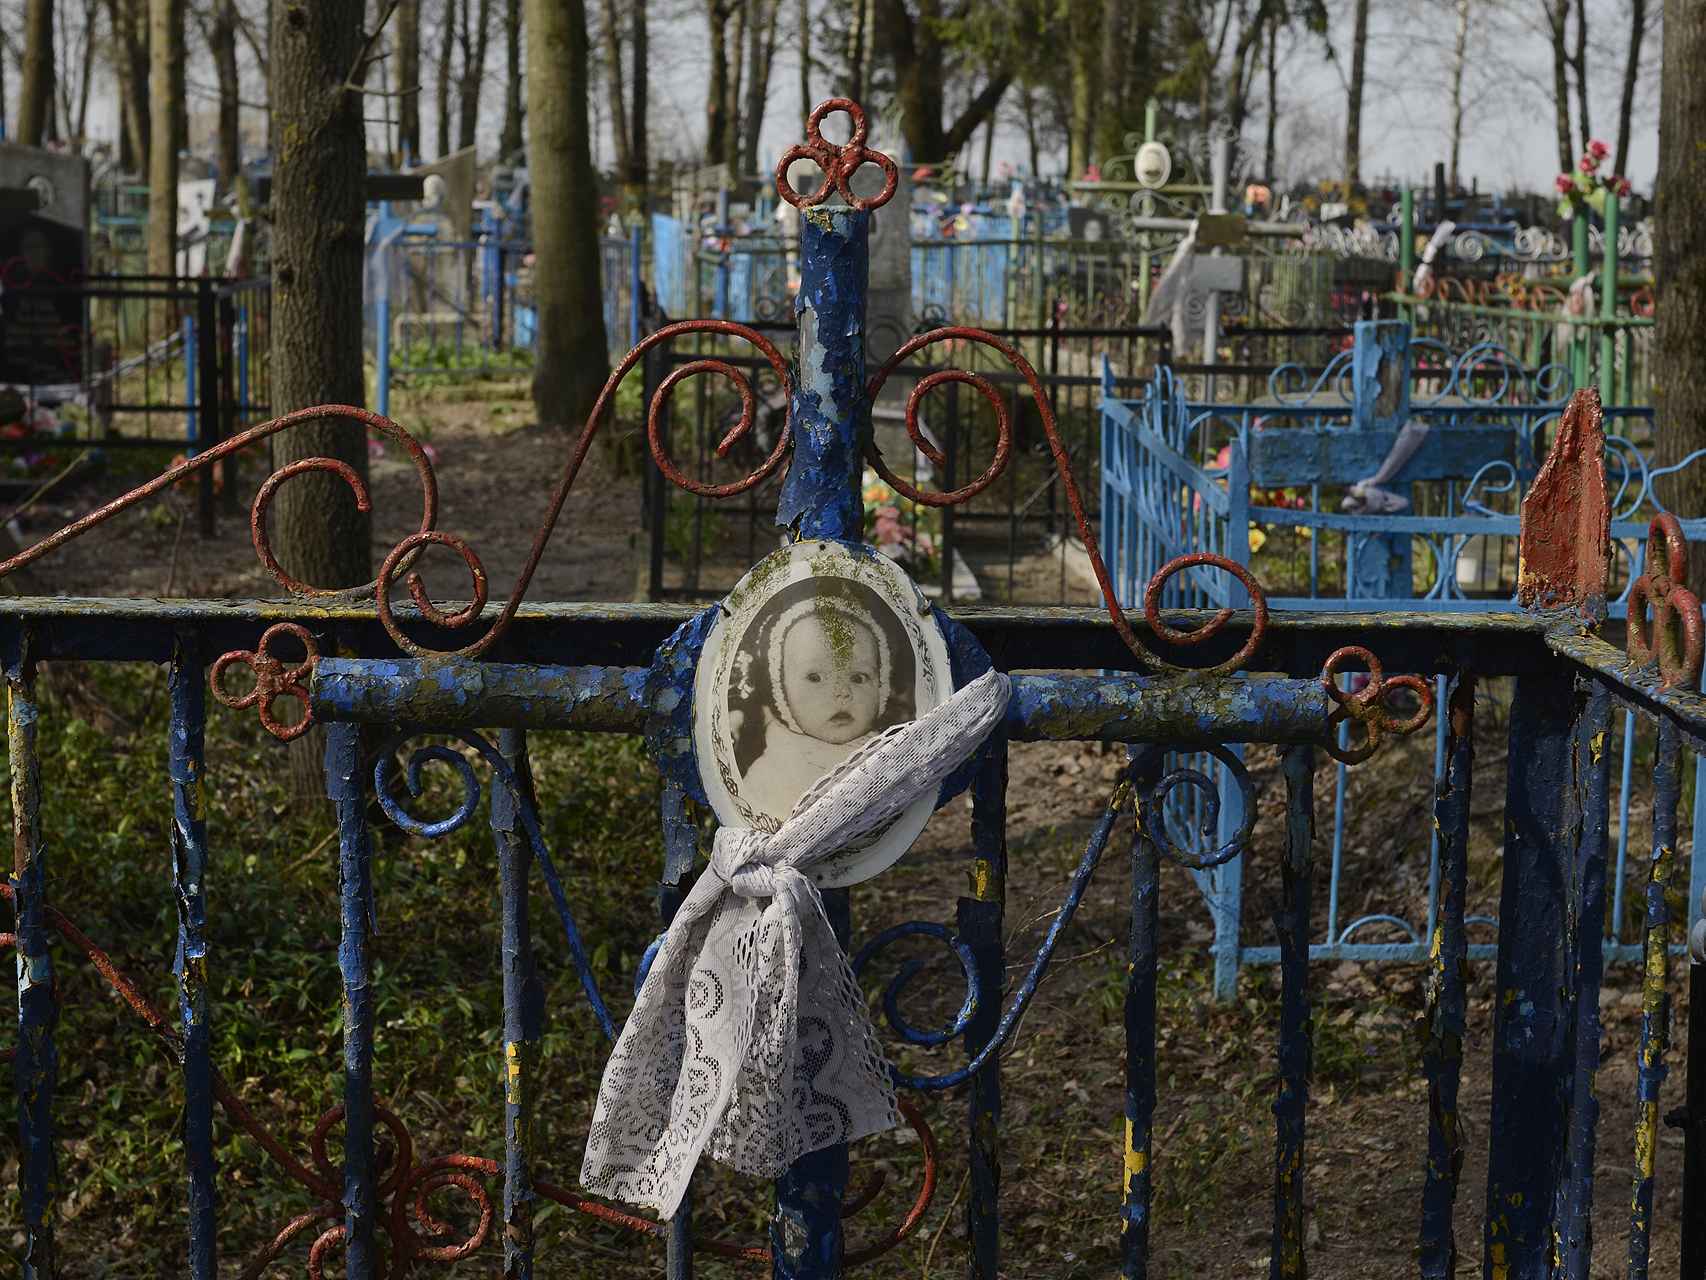 Tumba de un bebé en el cementerio de Gubarevichi, a 30 kilómetros de Chernóbil.